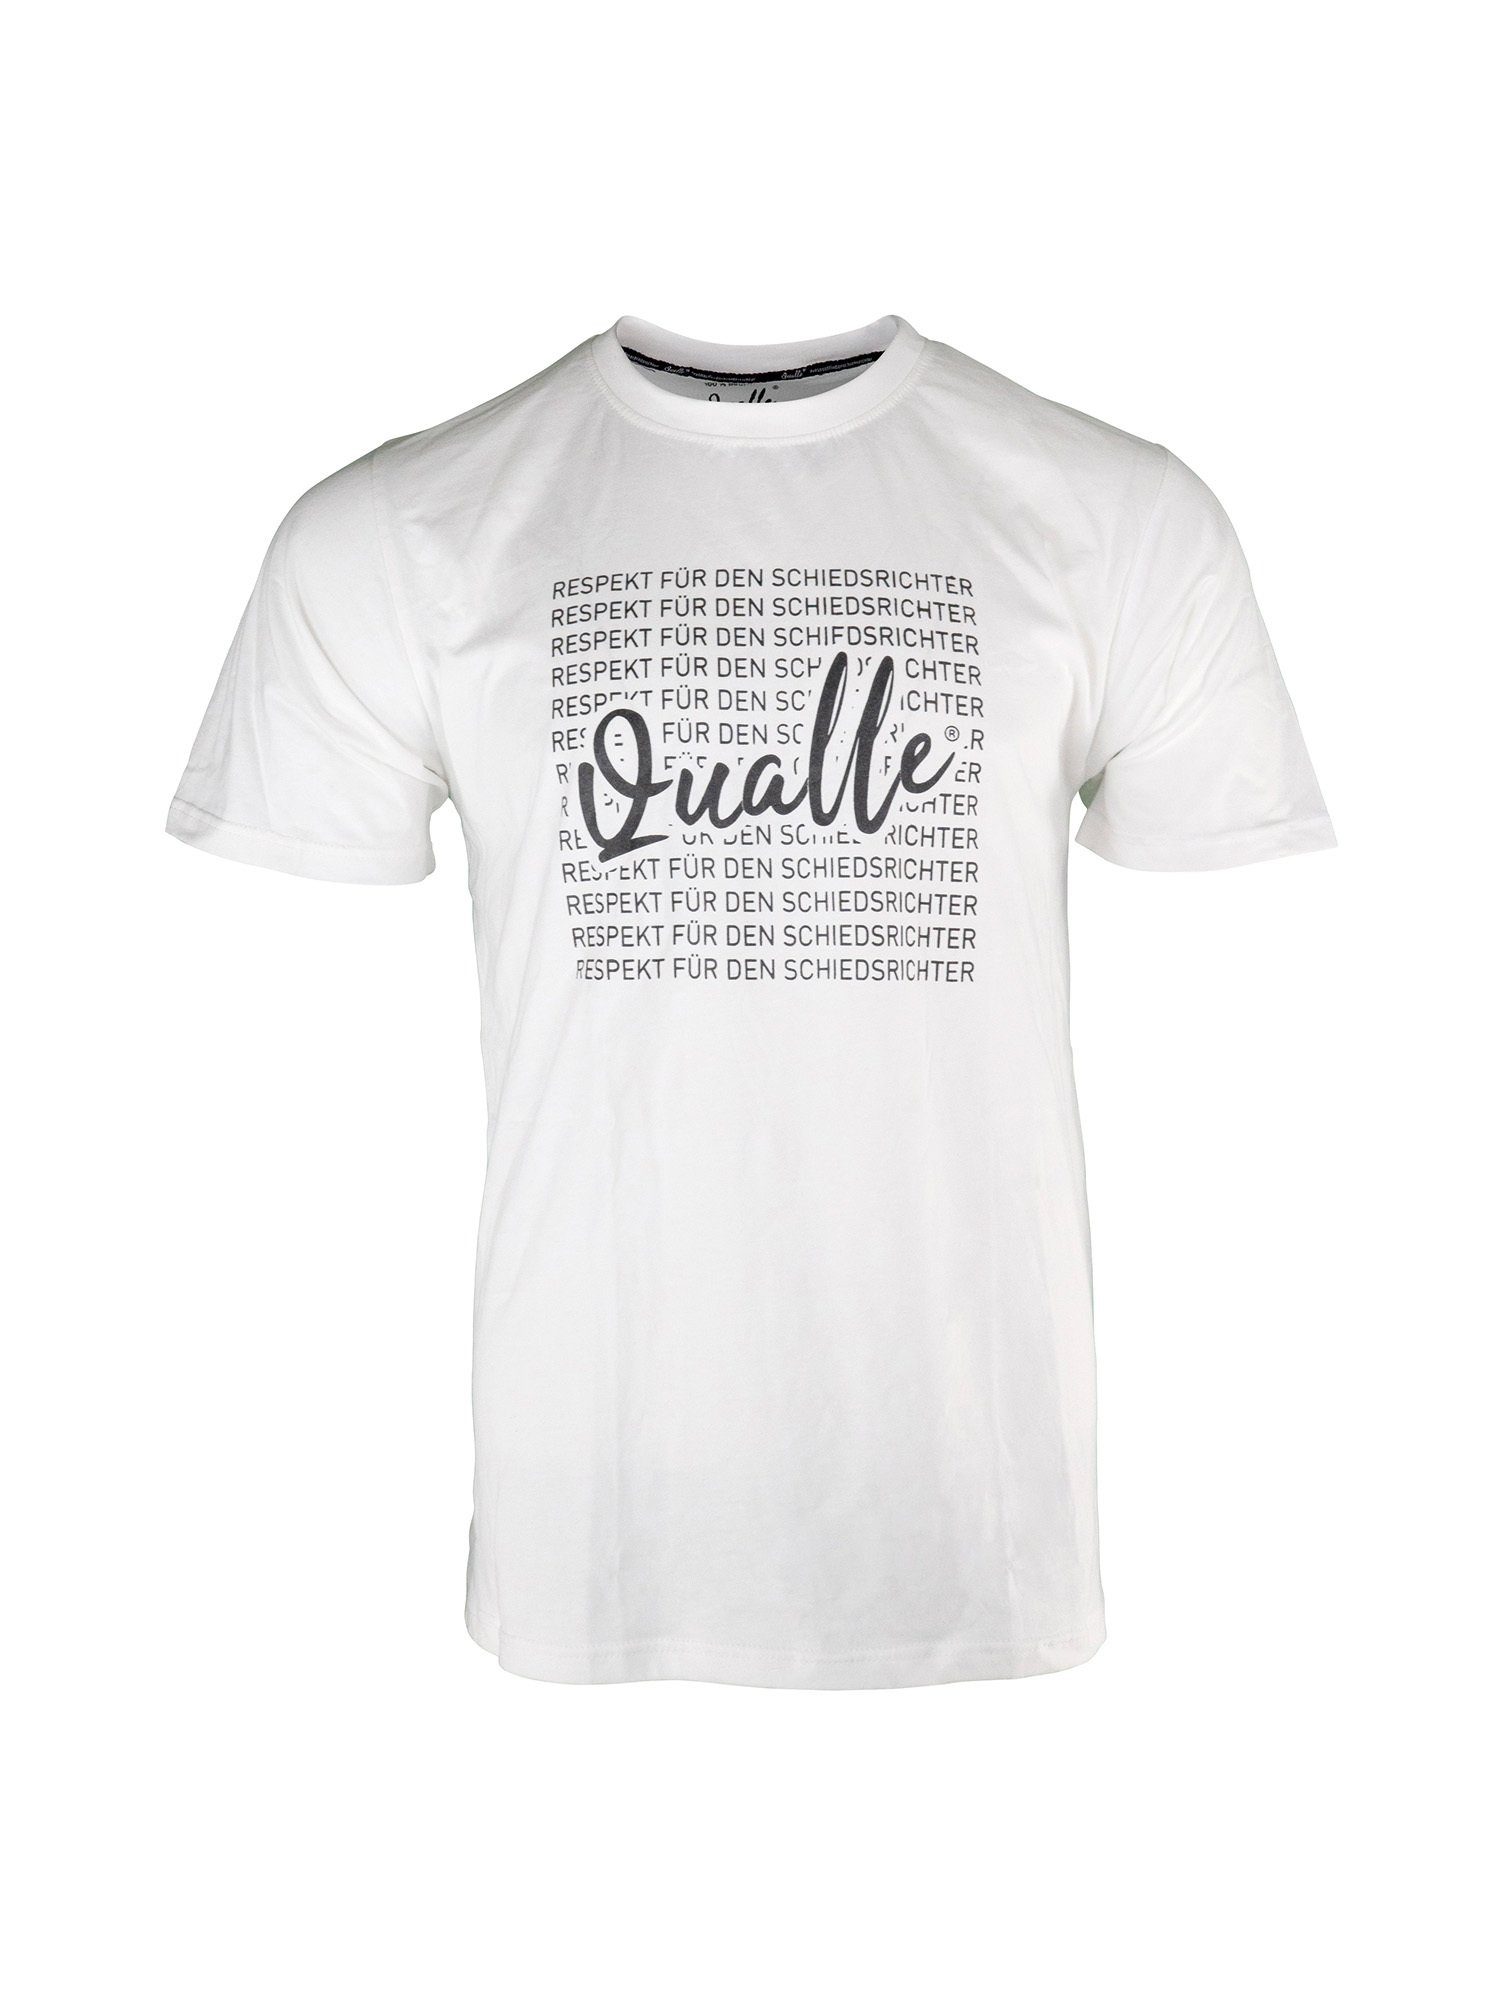 Qualle T-Shirt 100% Respekt Unisex, aus Baumwolle